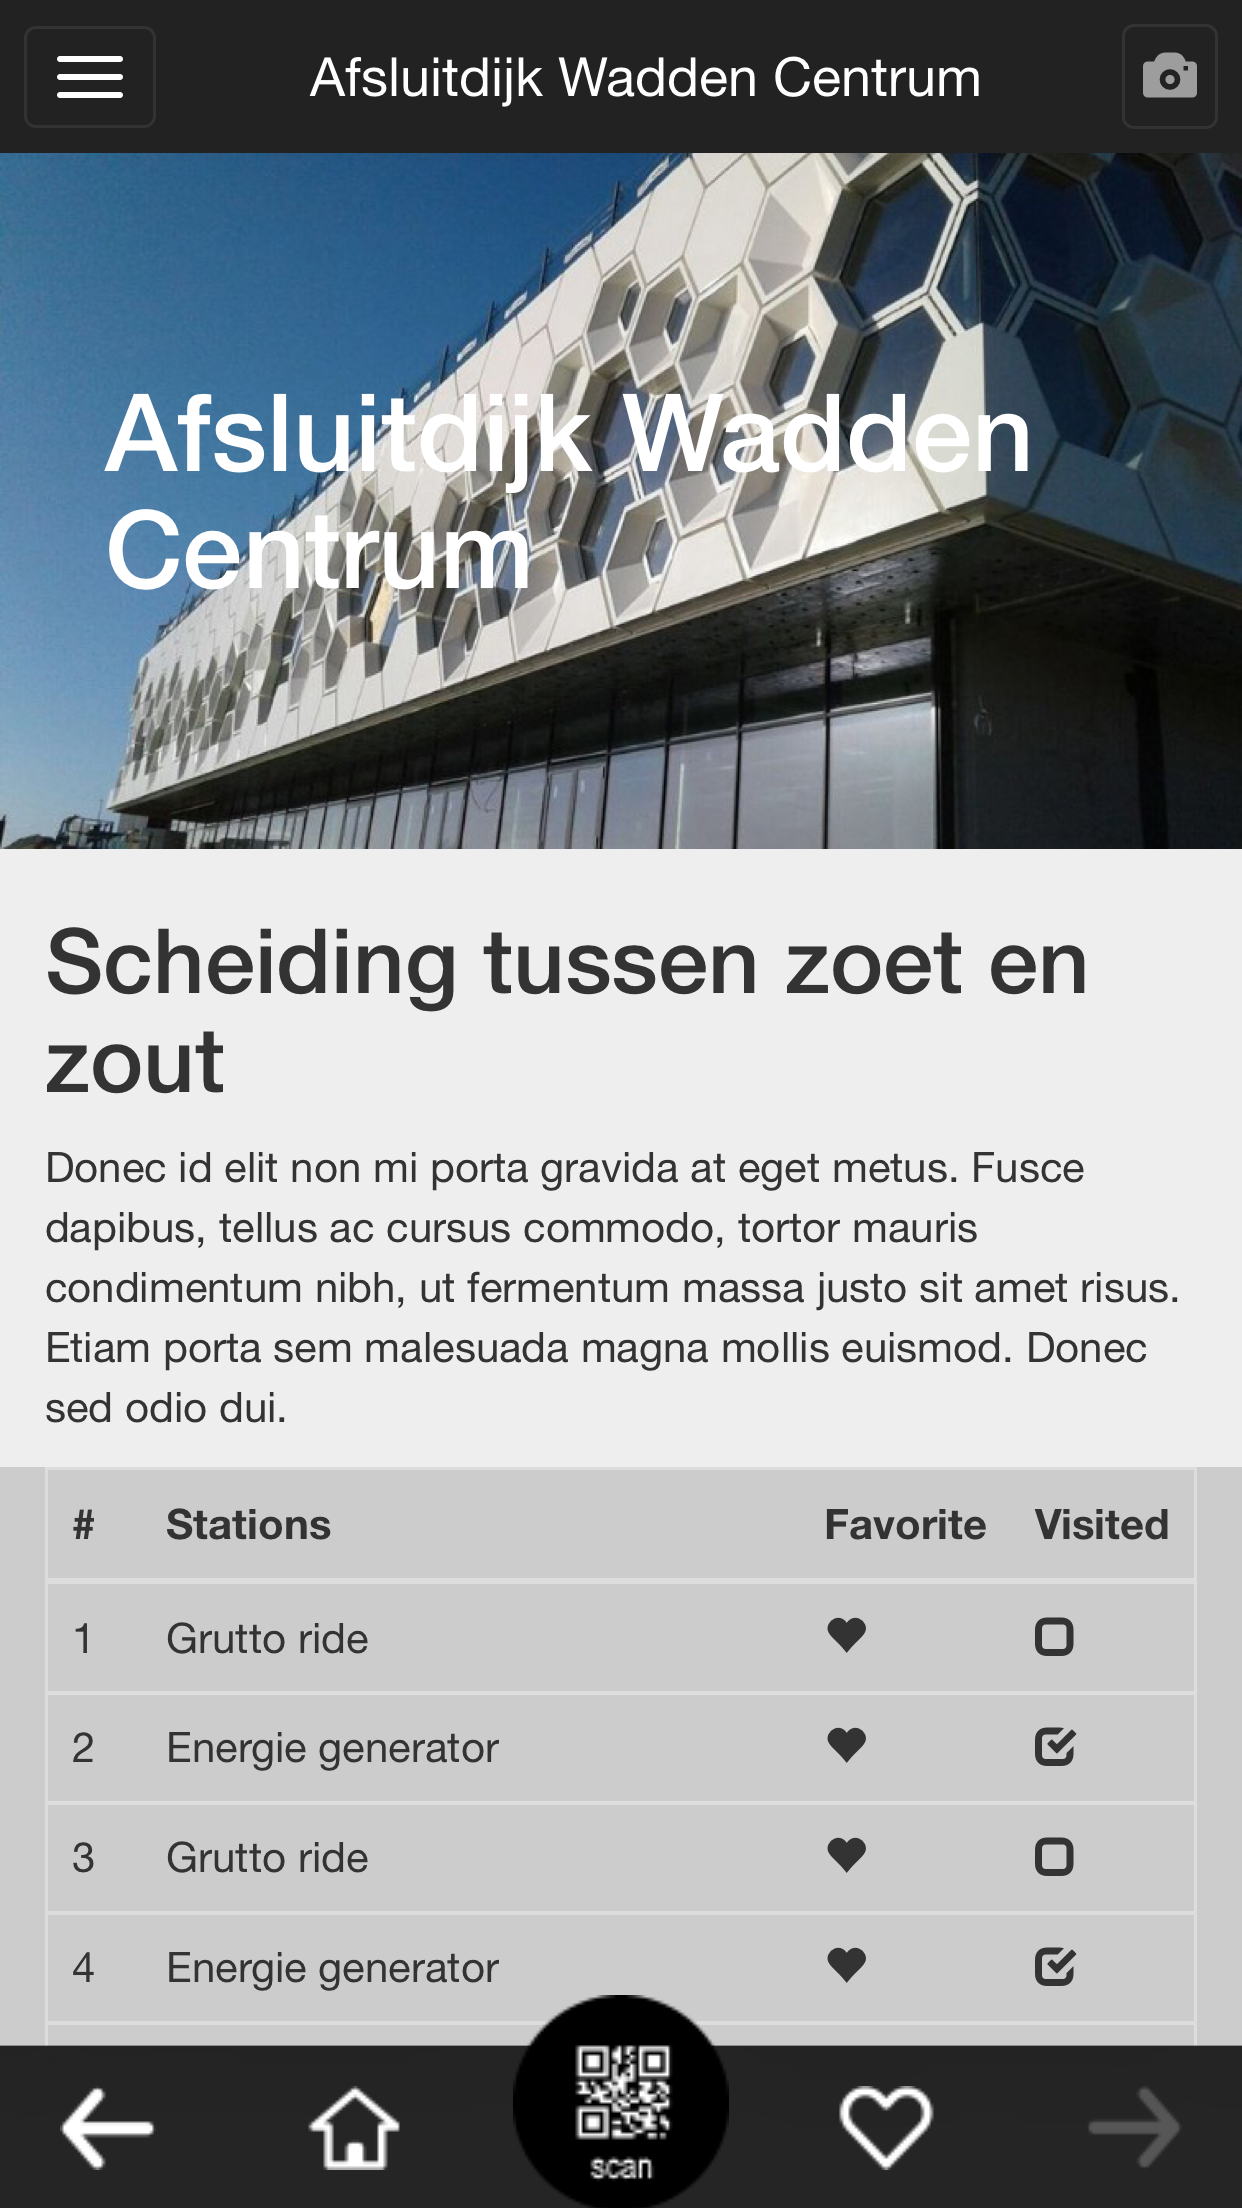 Interactieve Reis door het Afsluitdijk Waddencenter: QR-Code Verrijkte App